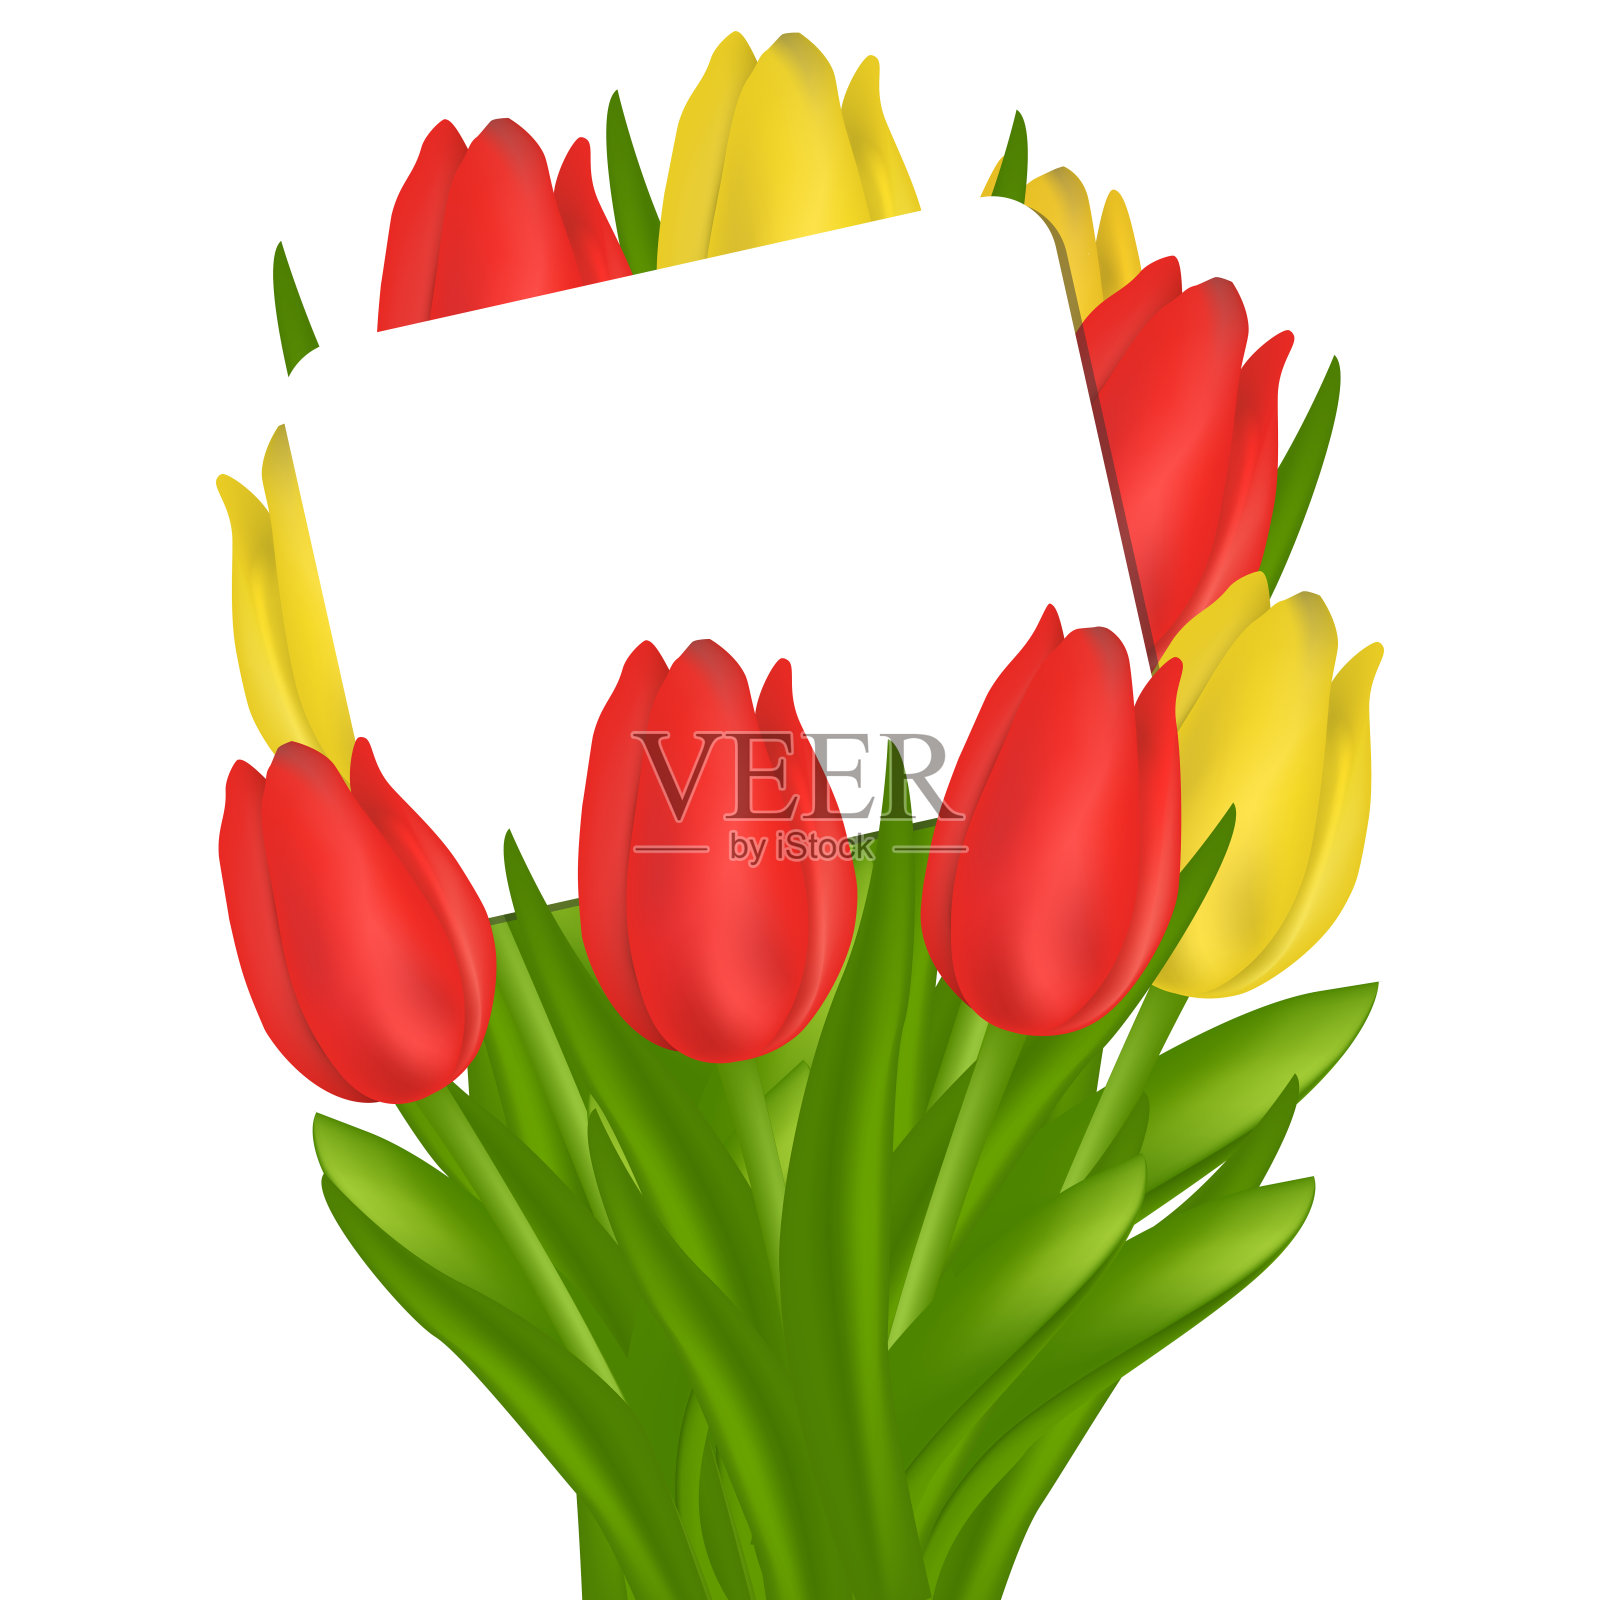 横幅插图节日特别优惠购物促销母亲节。一束红色和黄色的郁金香和一个文本框。向量设计元素图片